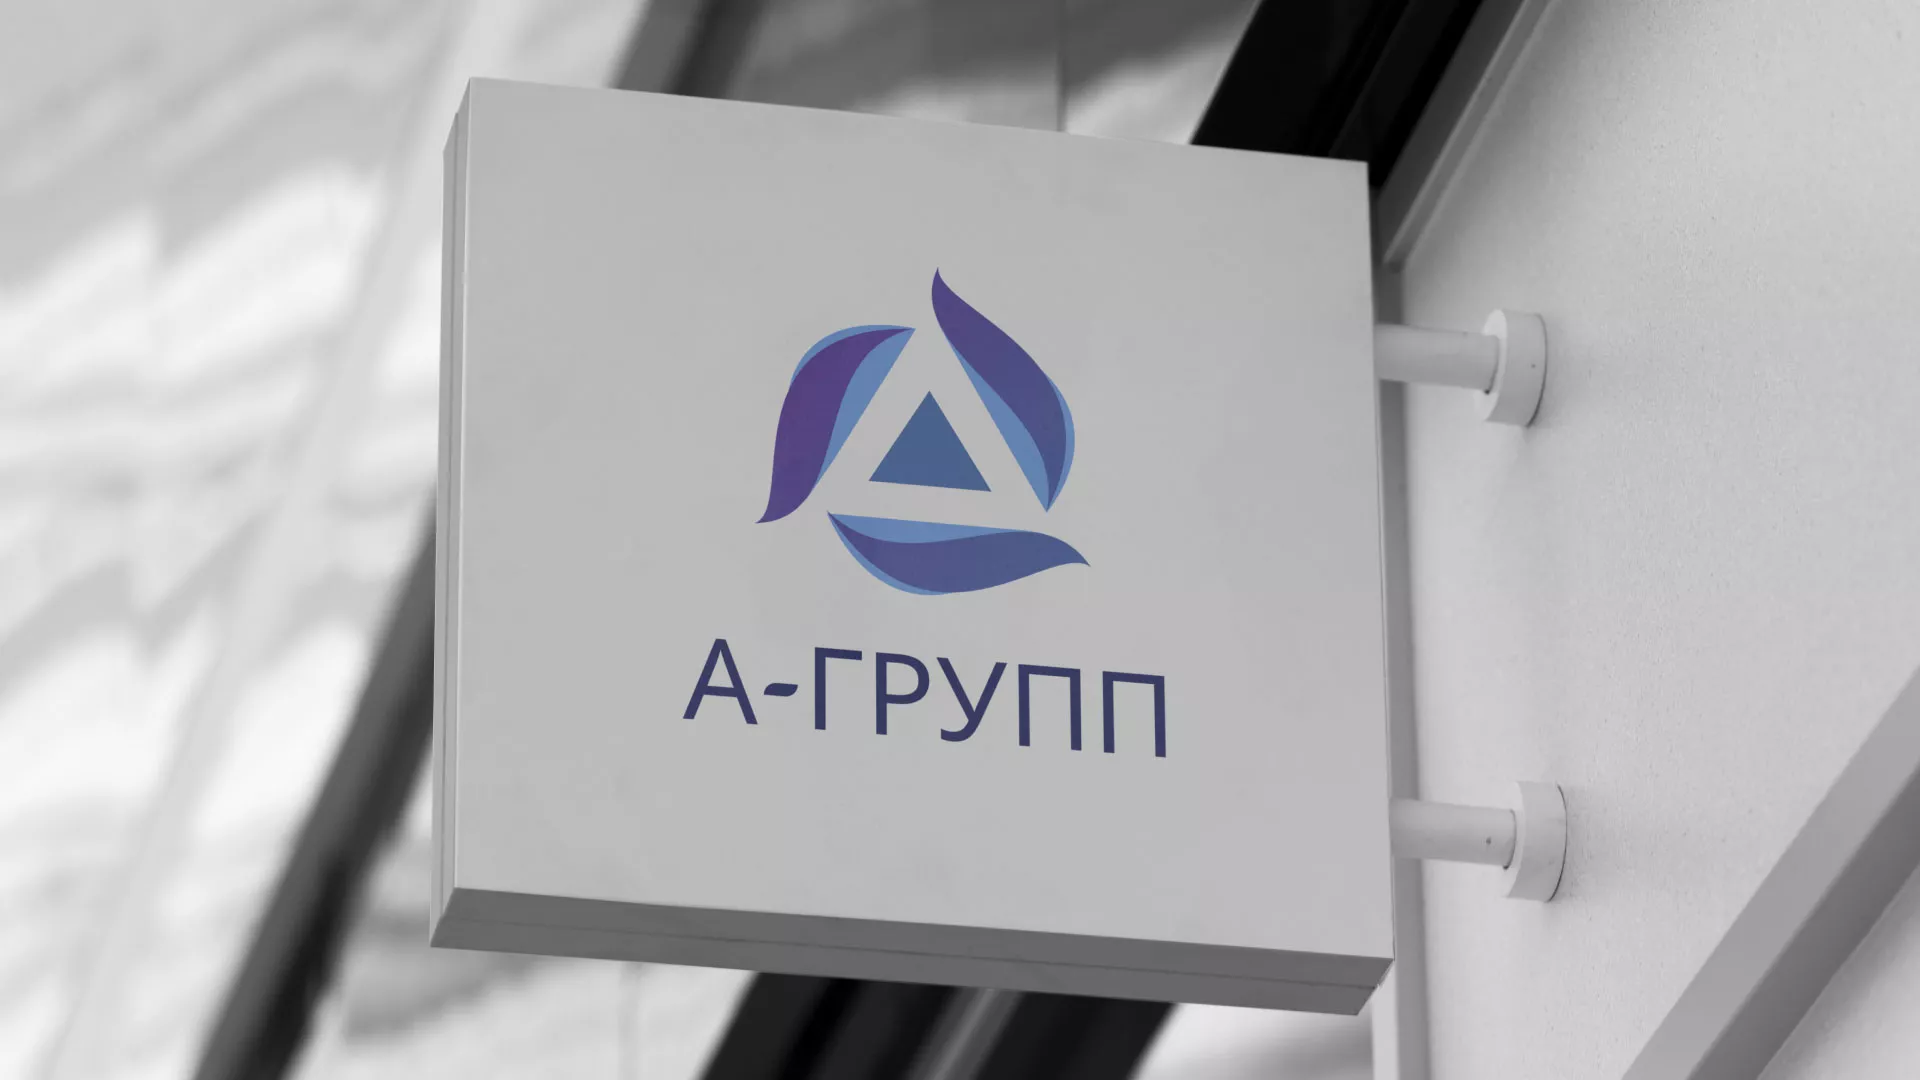 Создание логотипа компании «А-ГРУПП» в Петровске